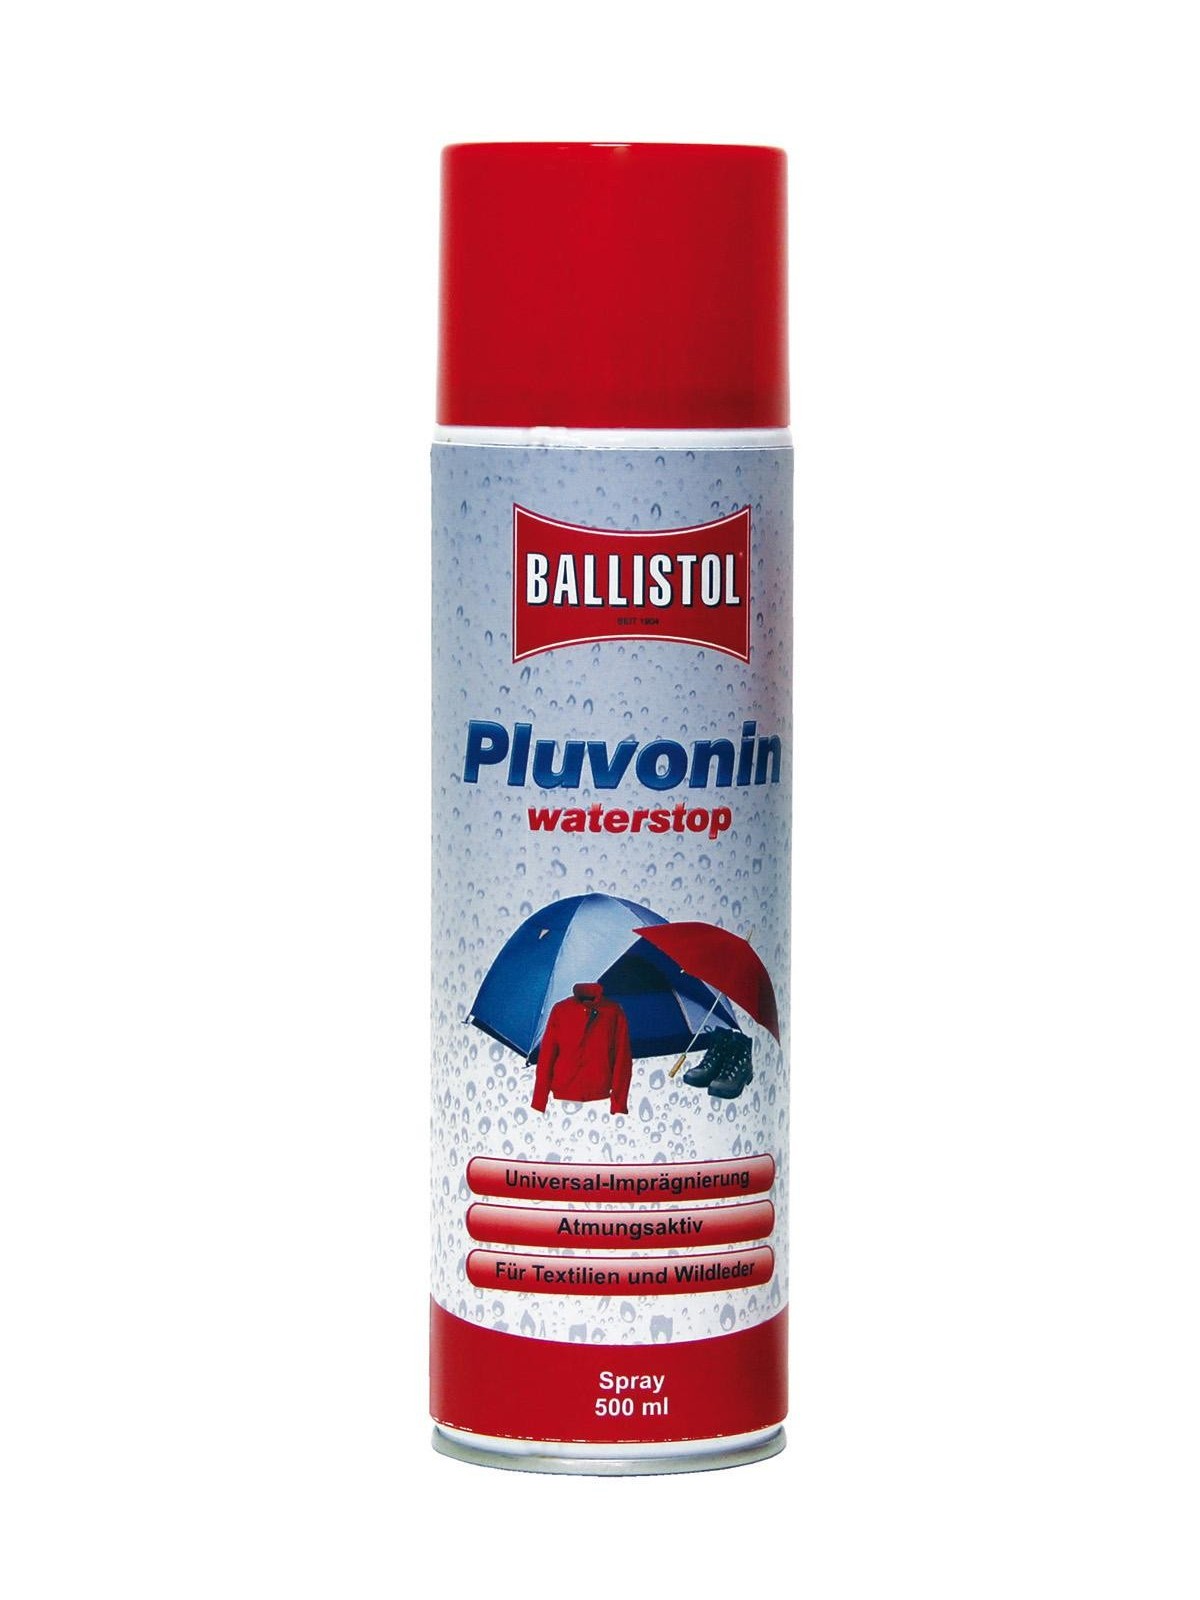 BALLISTOL Pluvonin